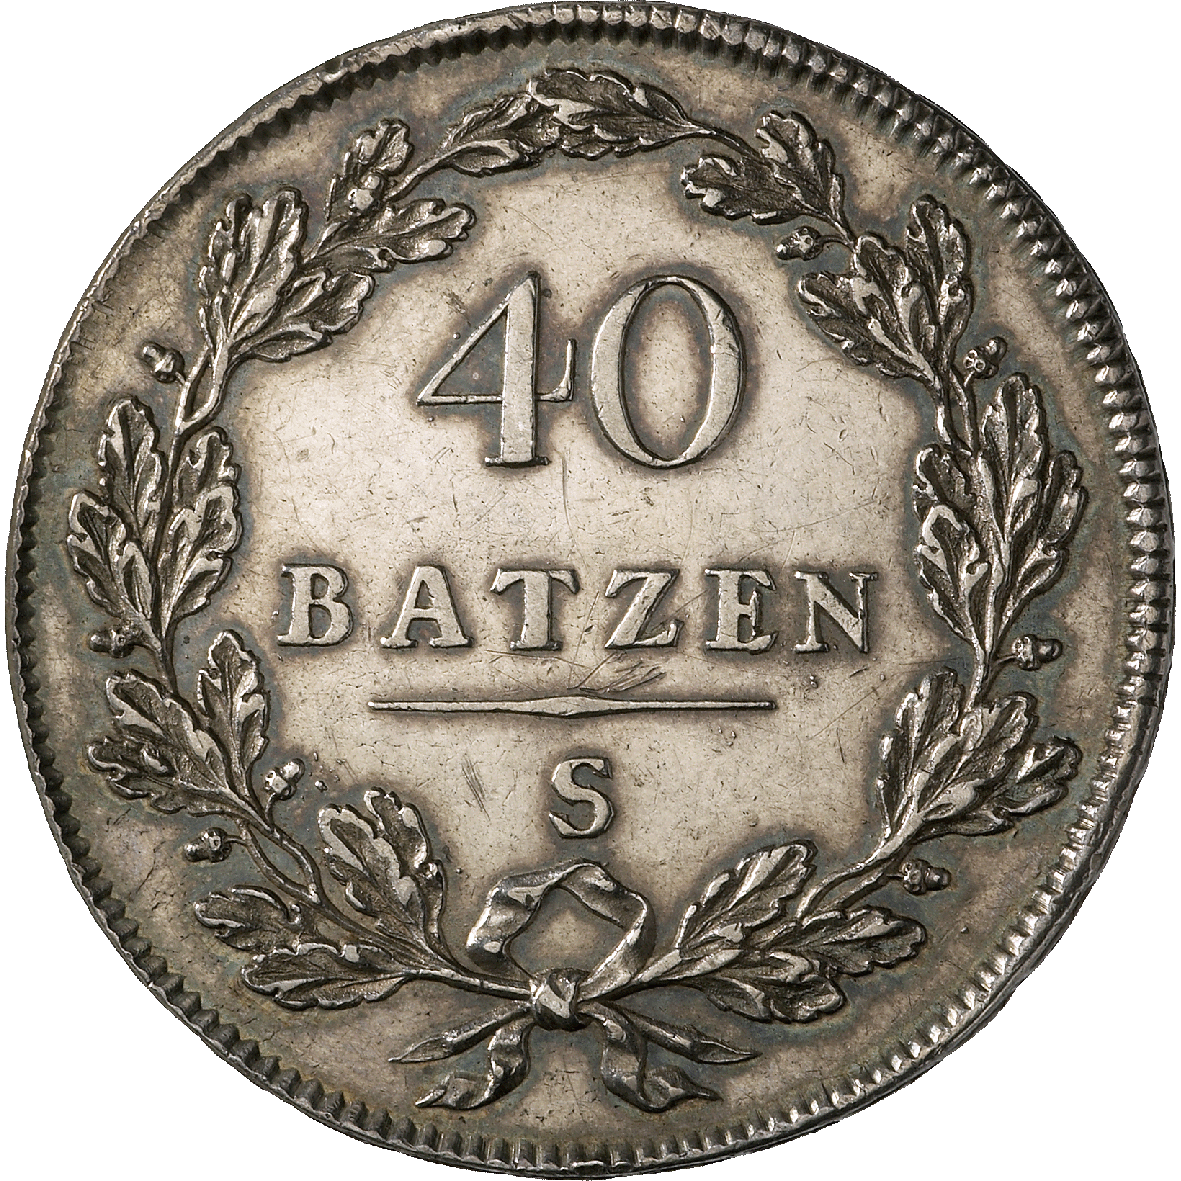 Helvetic Republic, 40 Batzen 1798 (reverse)